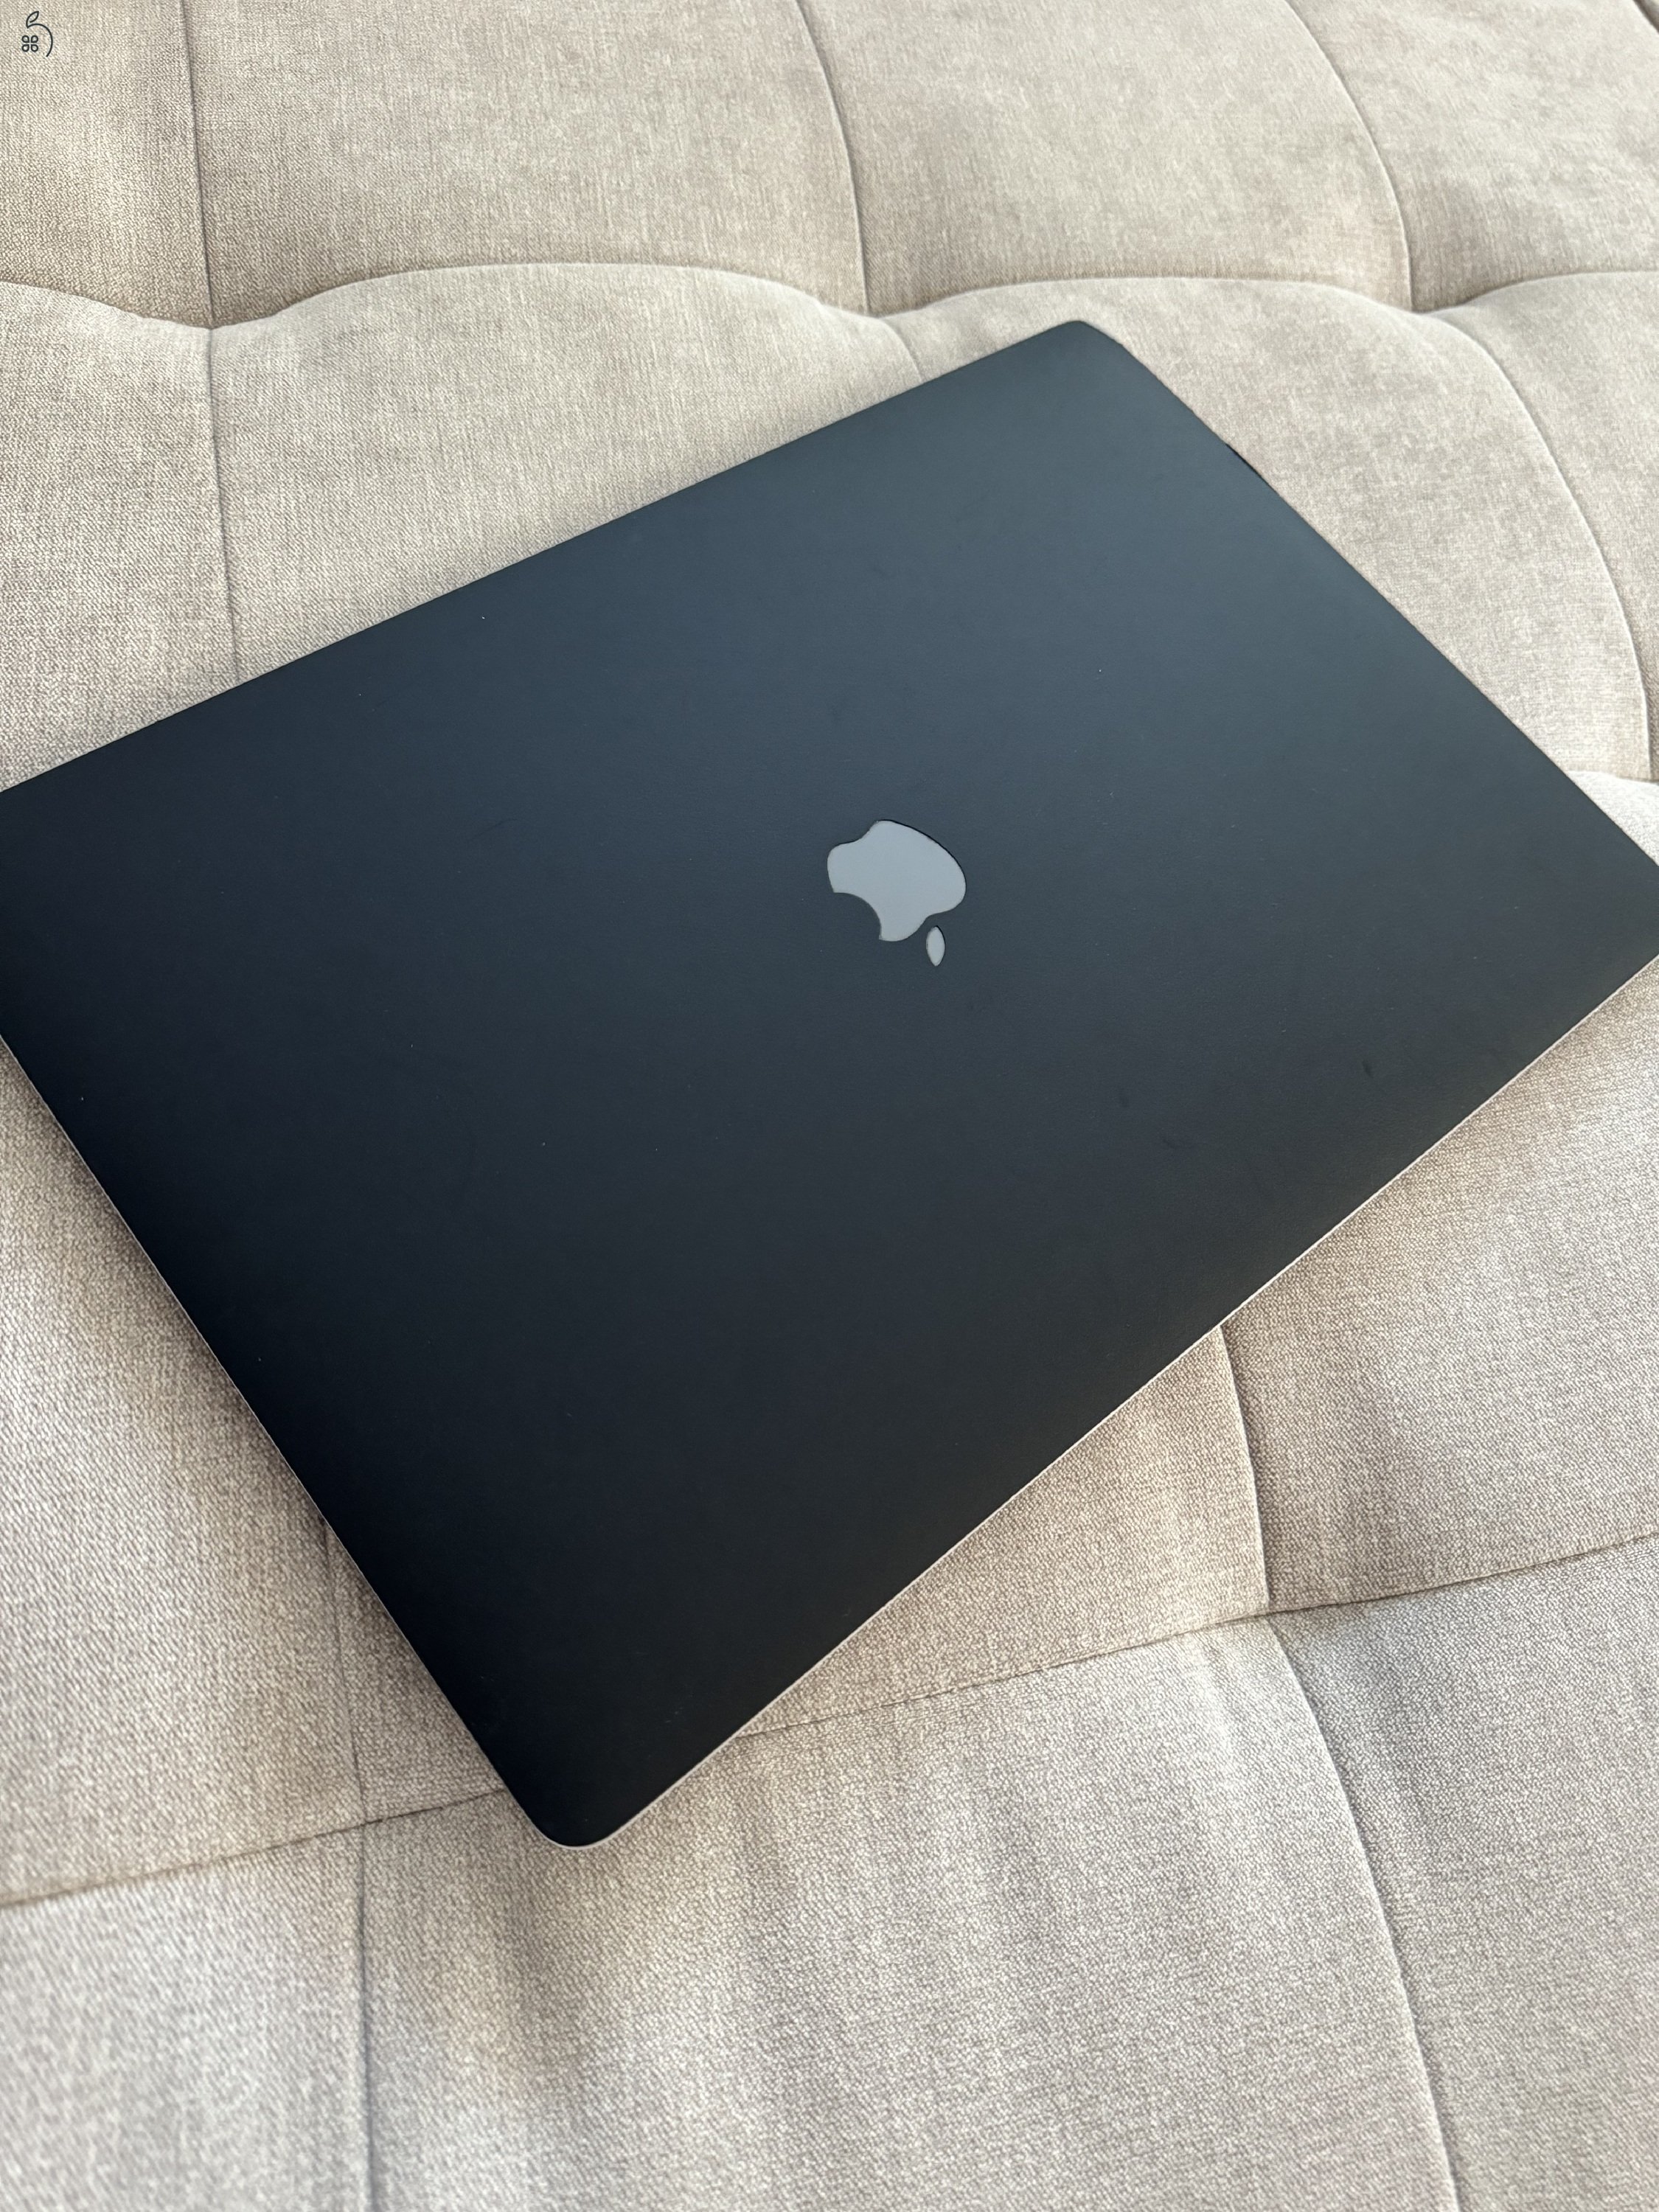 Macbook Pro 2019 16”